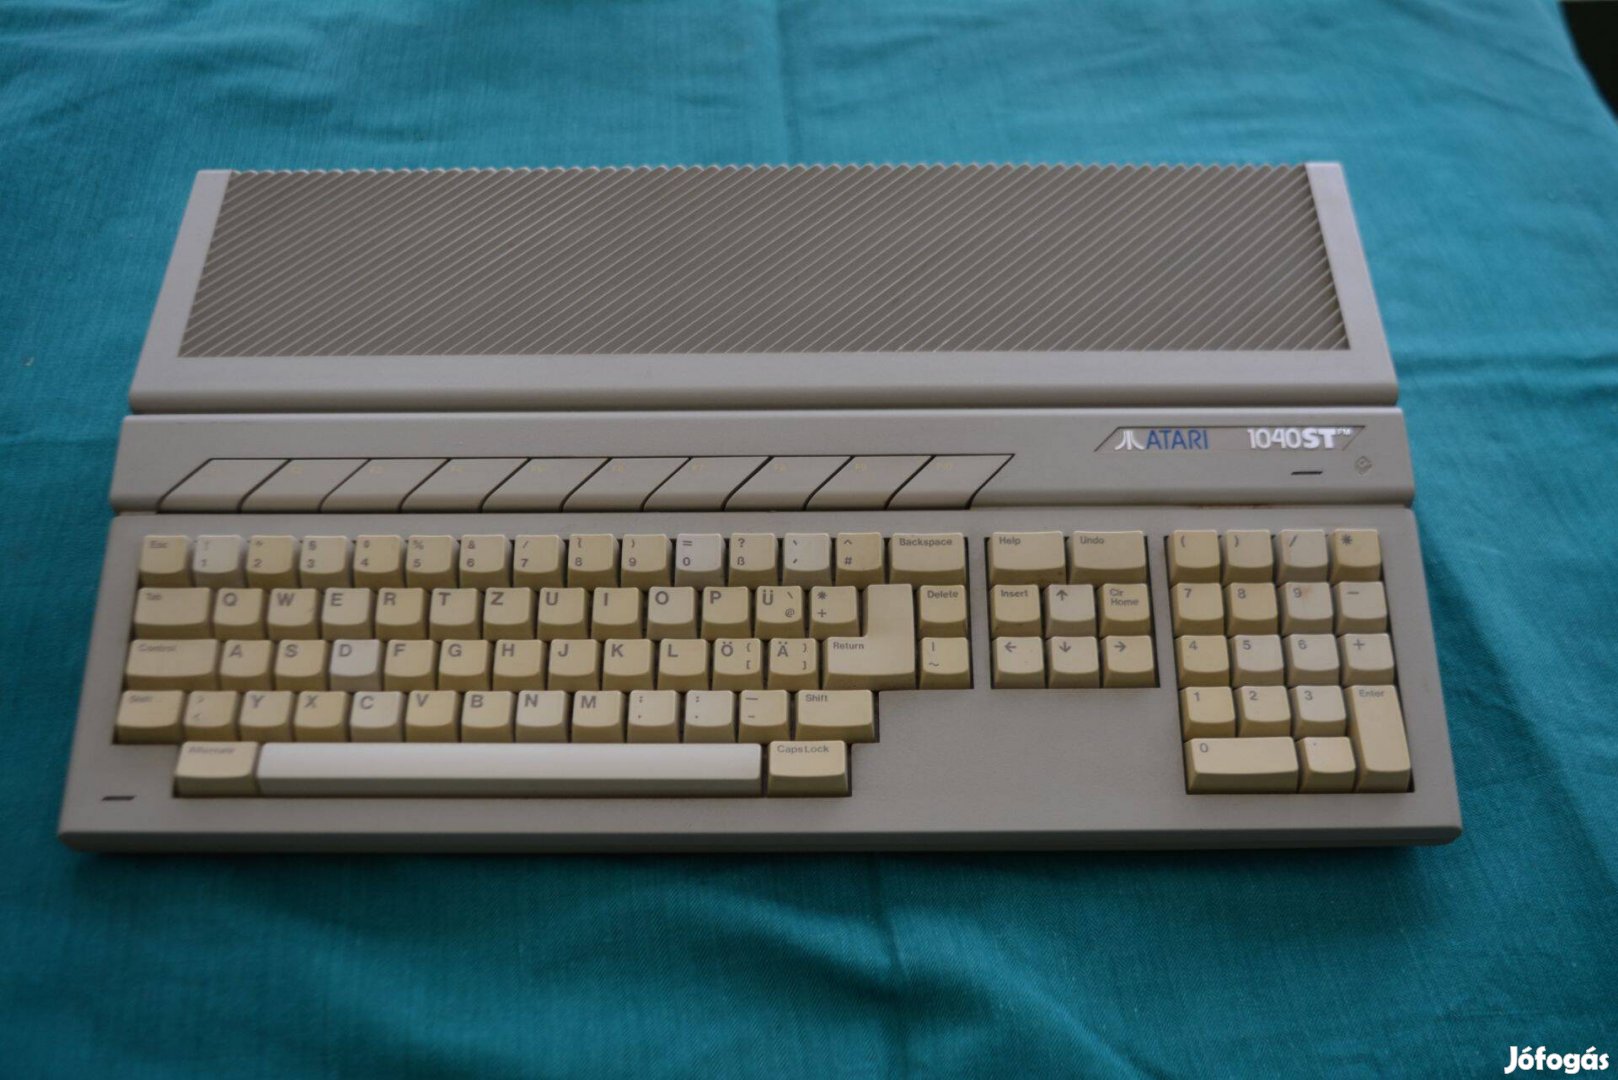 Atari 1040 Stfm Számítógép